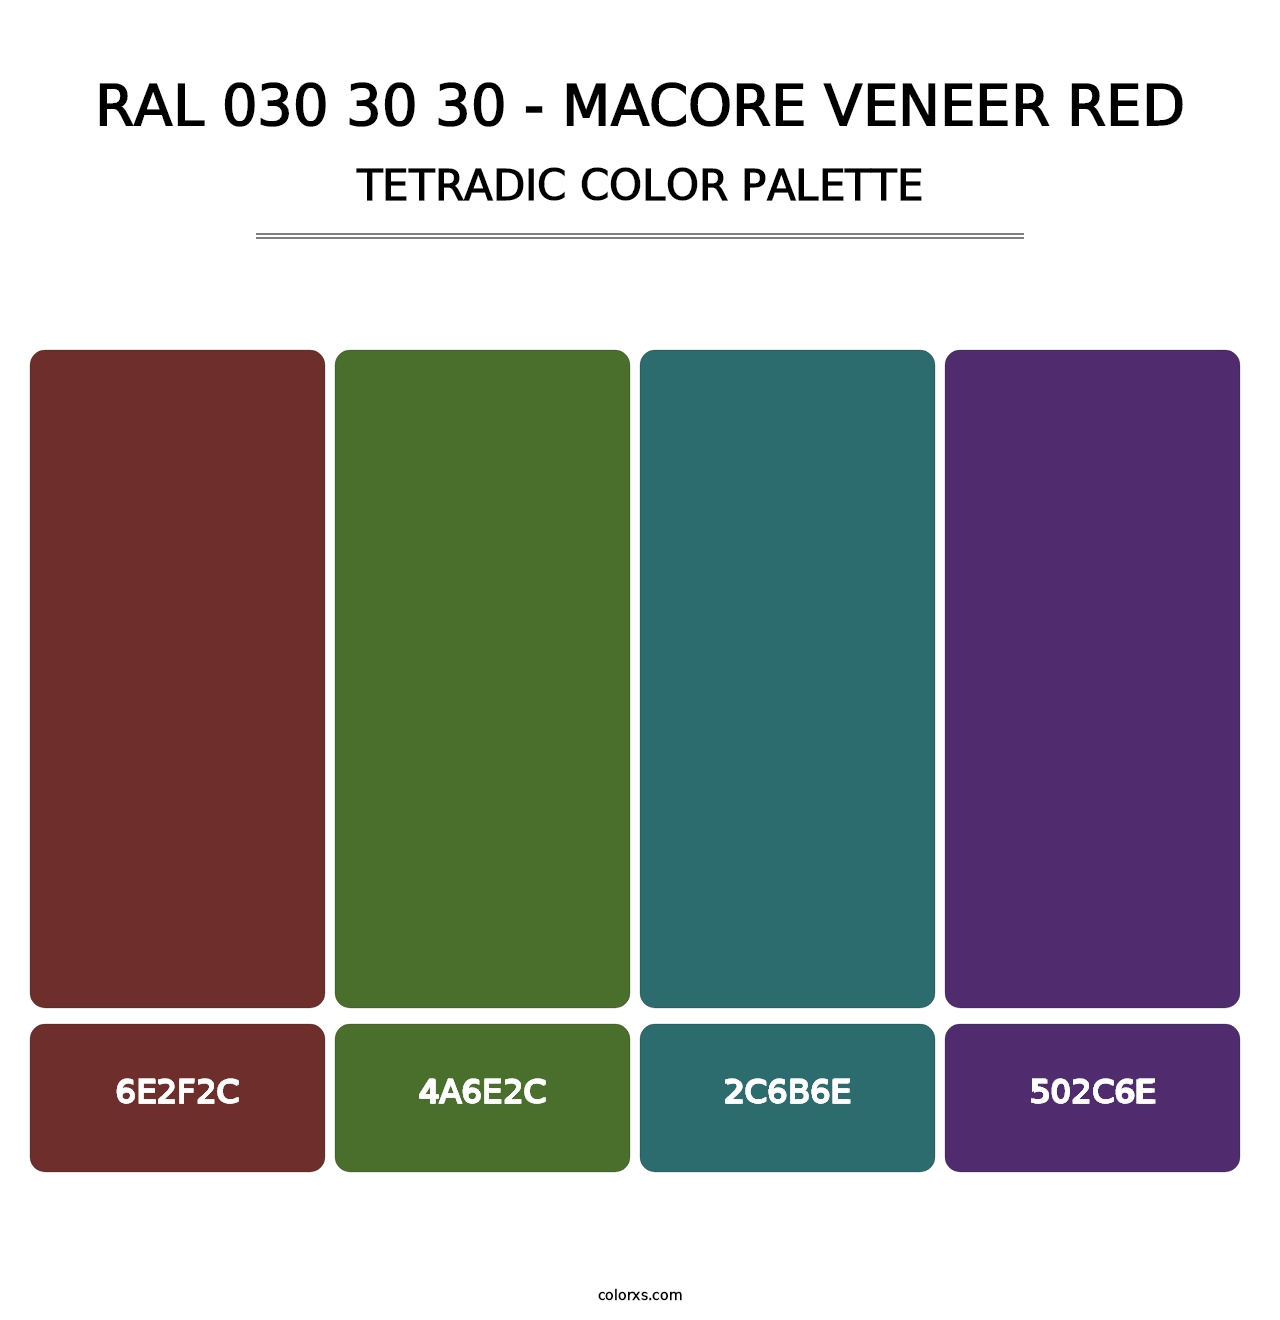 RAL 030 30 30 - Macore Veneer Red - Tetradic Color Palette